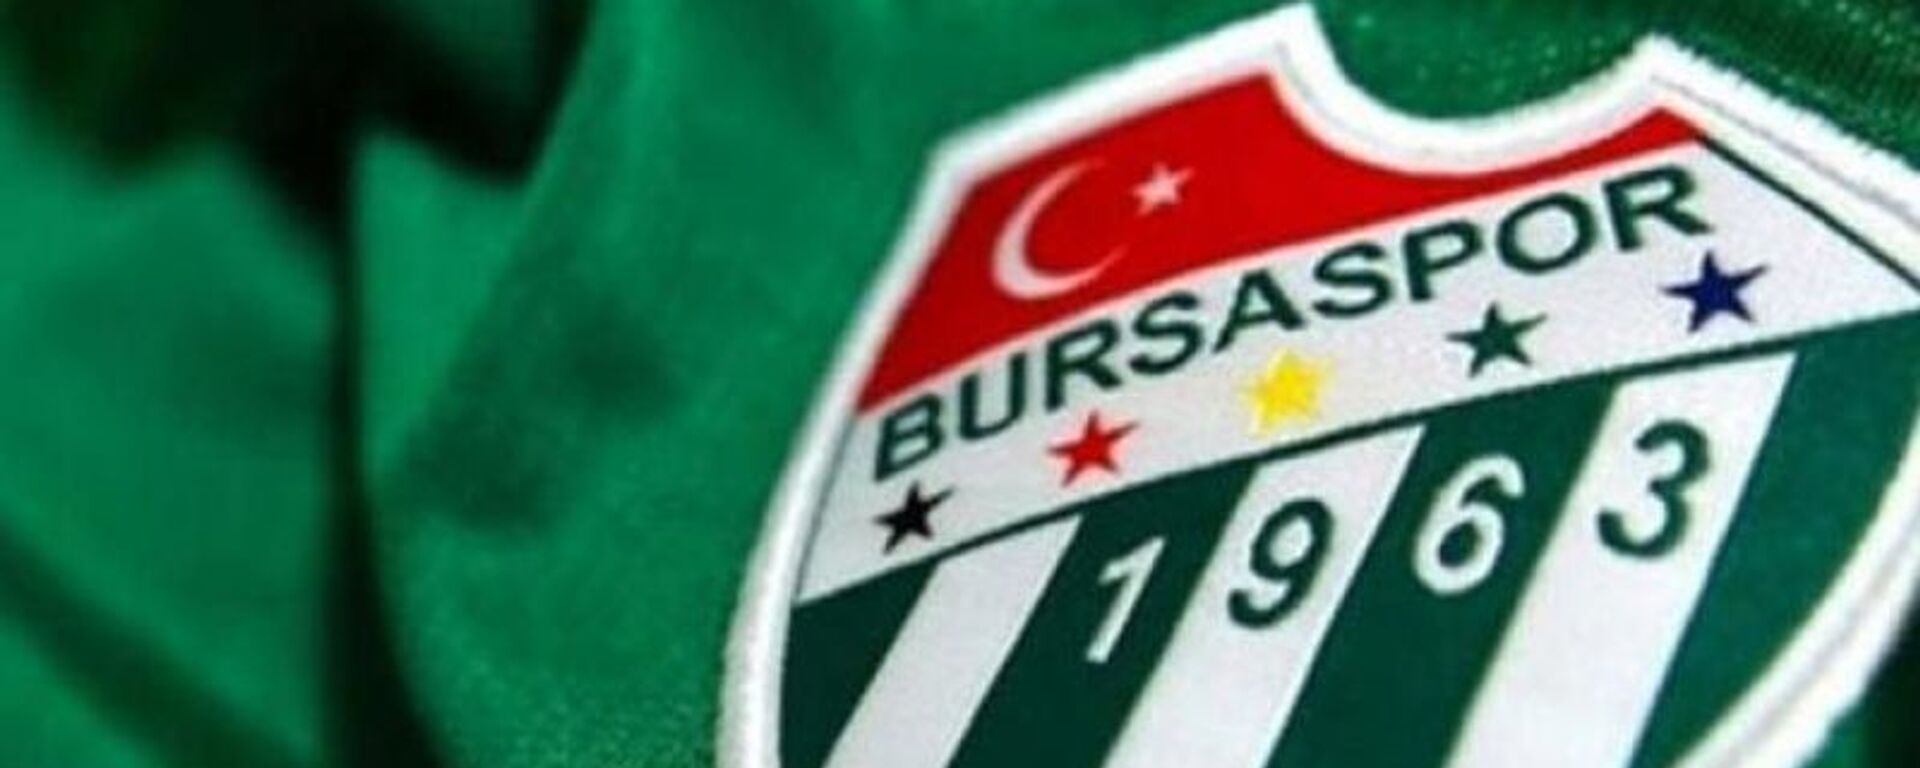 Bursaspor - Logo - Amblem - Sputnik Türkiye, 1920, 23.06.2021